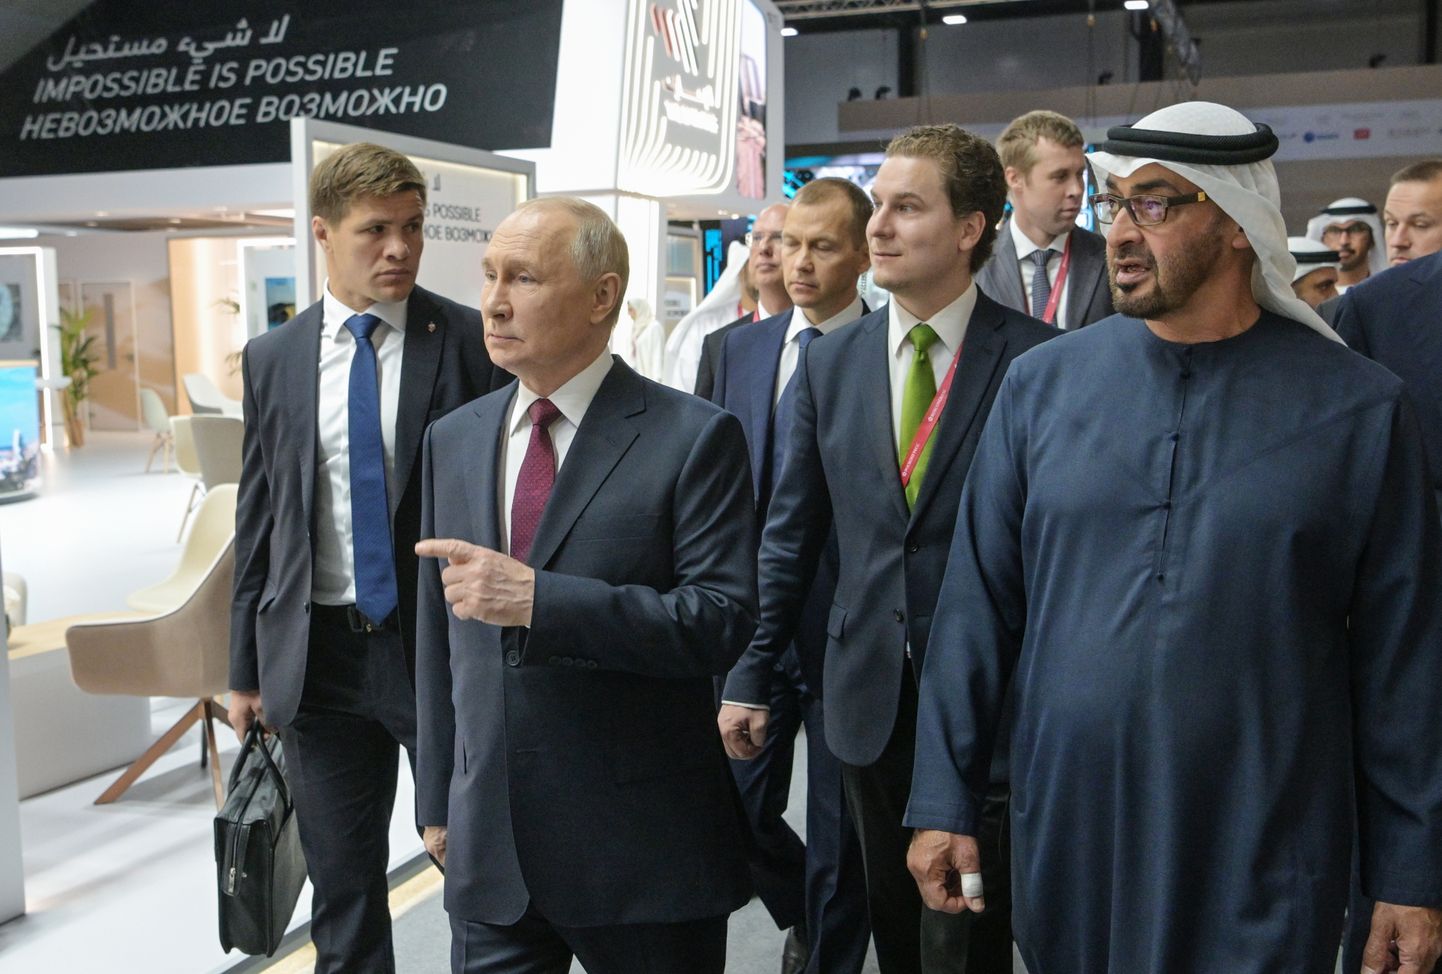 Venemaa president Vladimir Putin külastamas AÜE paviljoni Peterburi rahvusvahelisel majandusfoorumil.